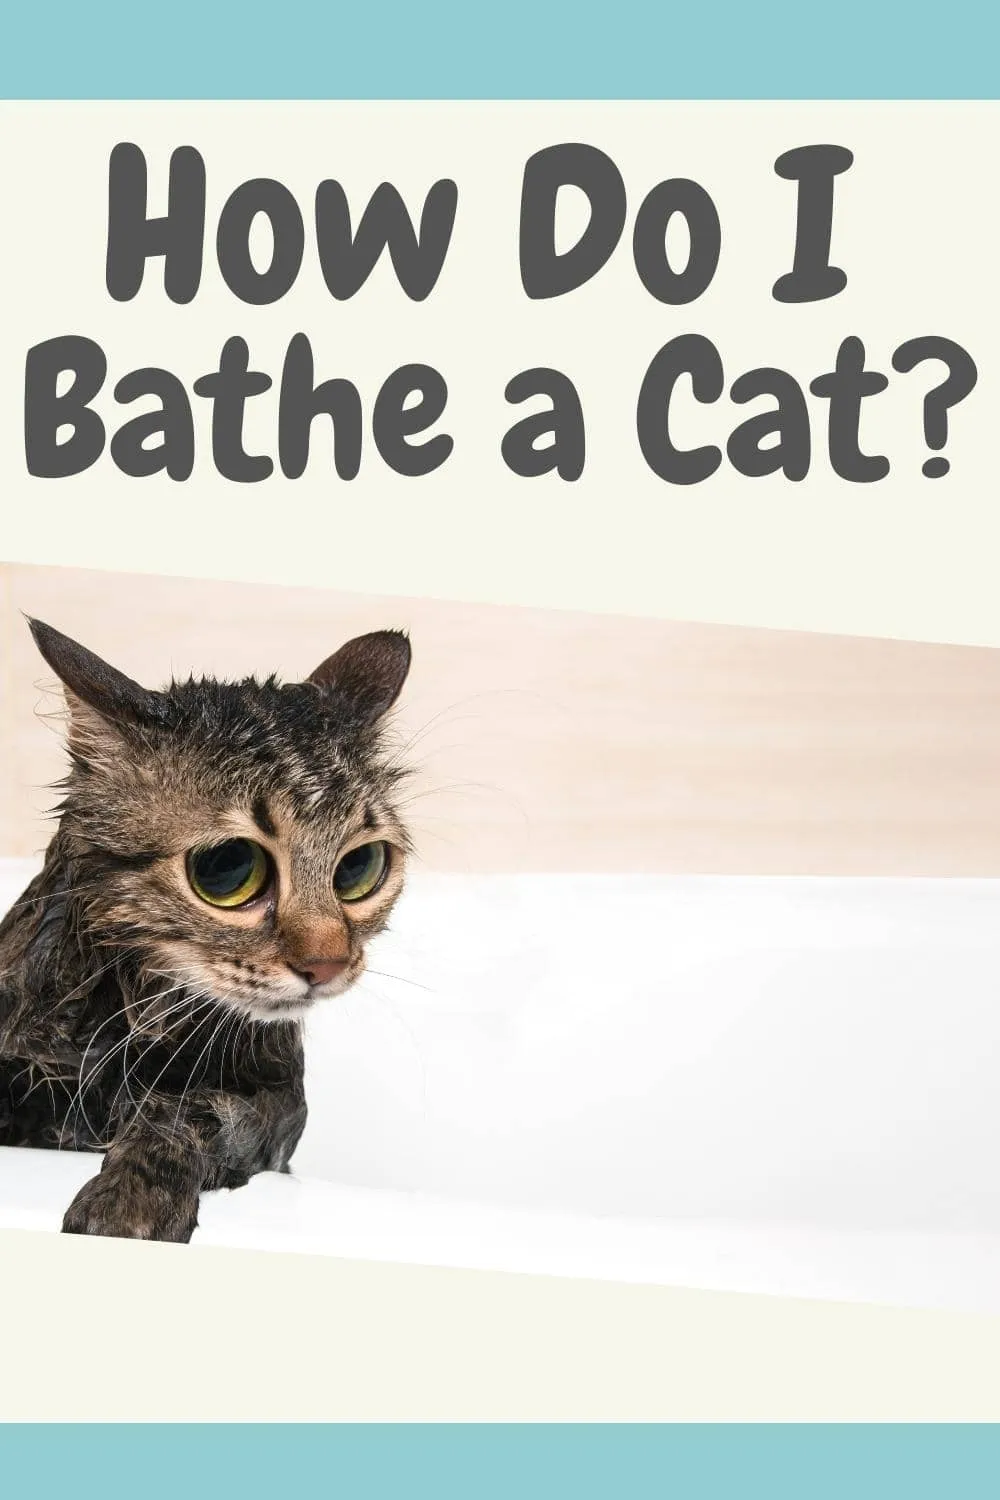 How Do I Bathe a Cat